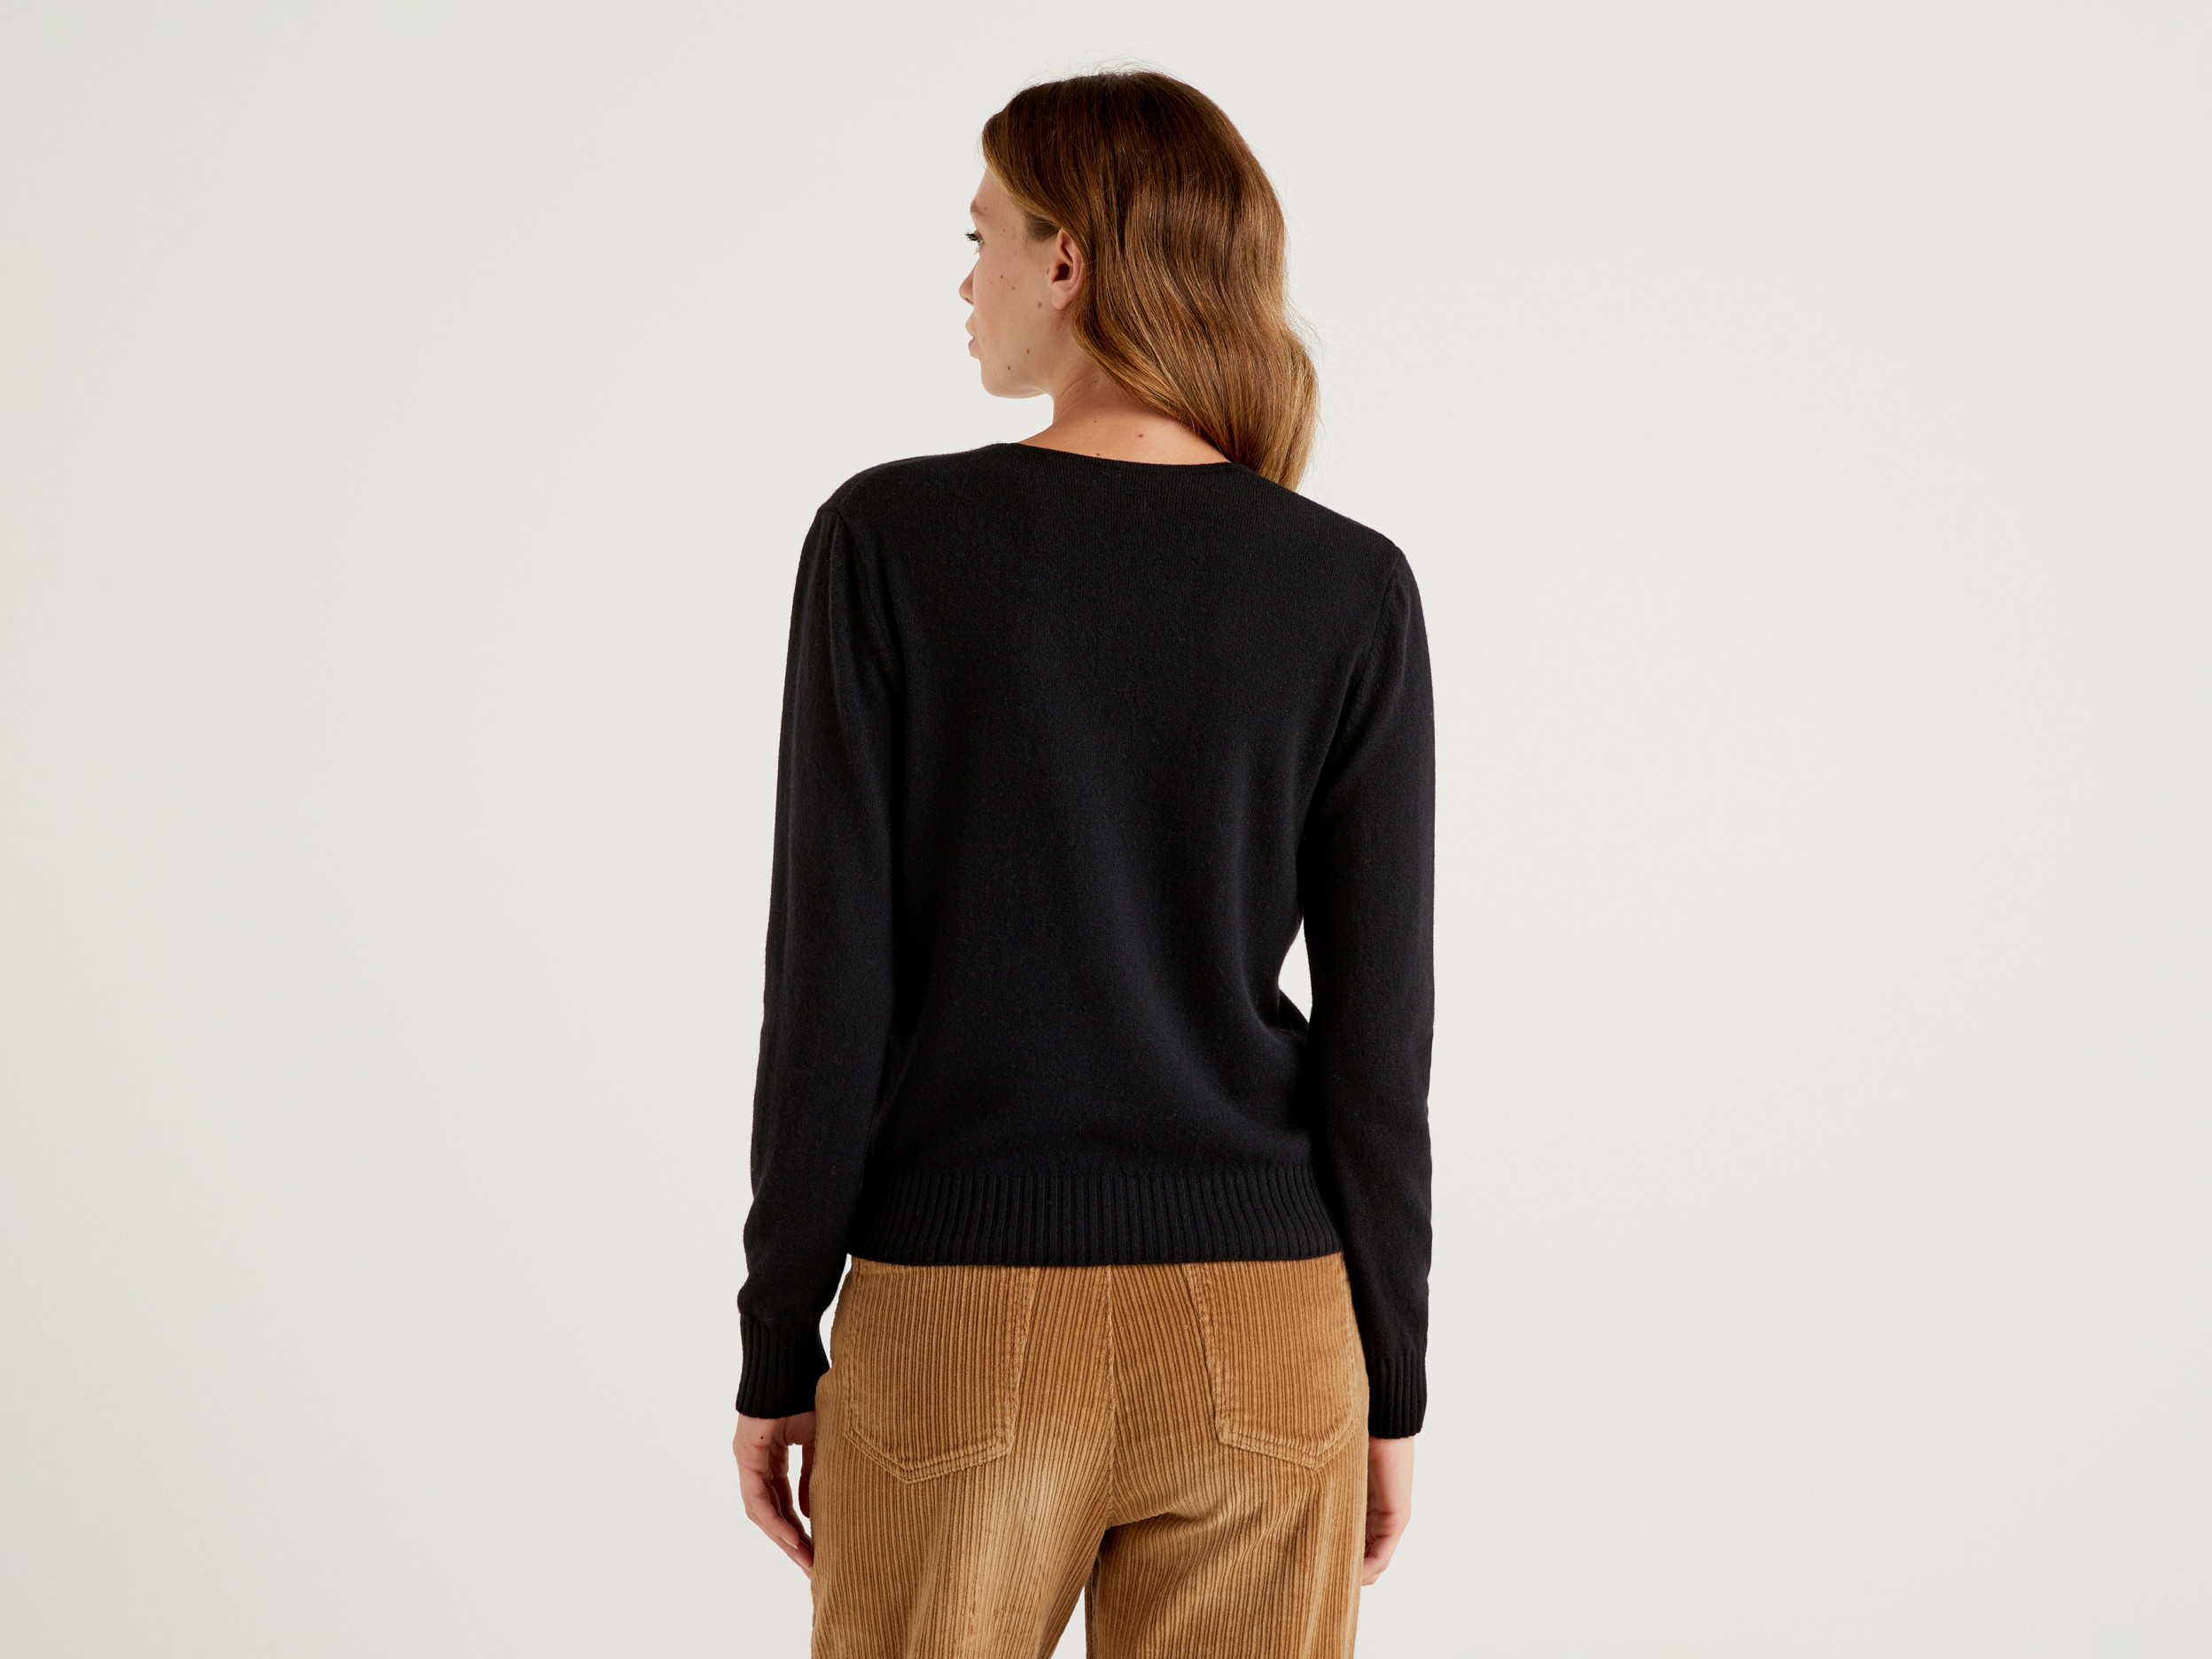 benetton, v-neck sweater in cashmere blend, taglia l, black, women